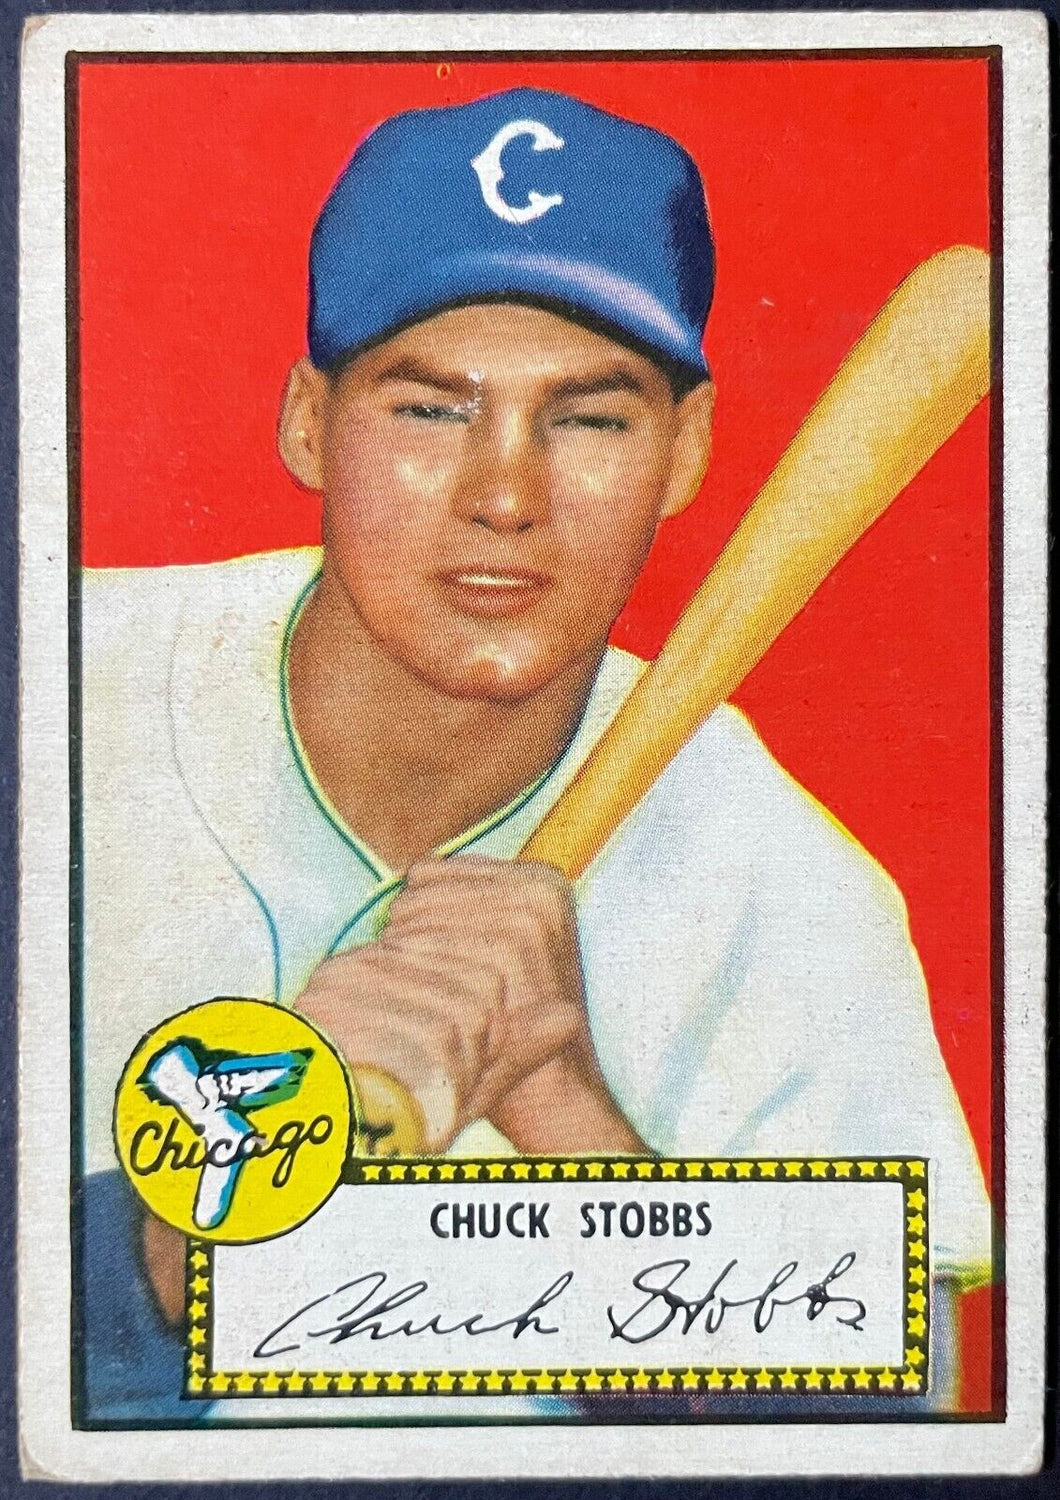 1952 Topps Baseball Chuck Stobbs #62 Chicago White Sox Vintage MLB Card